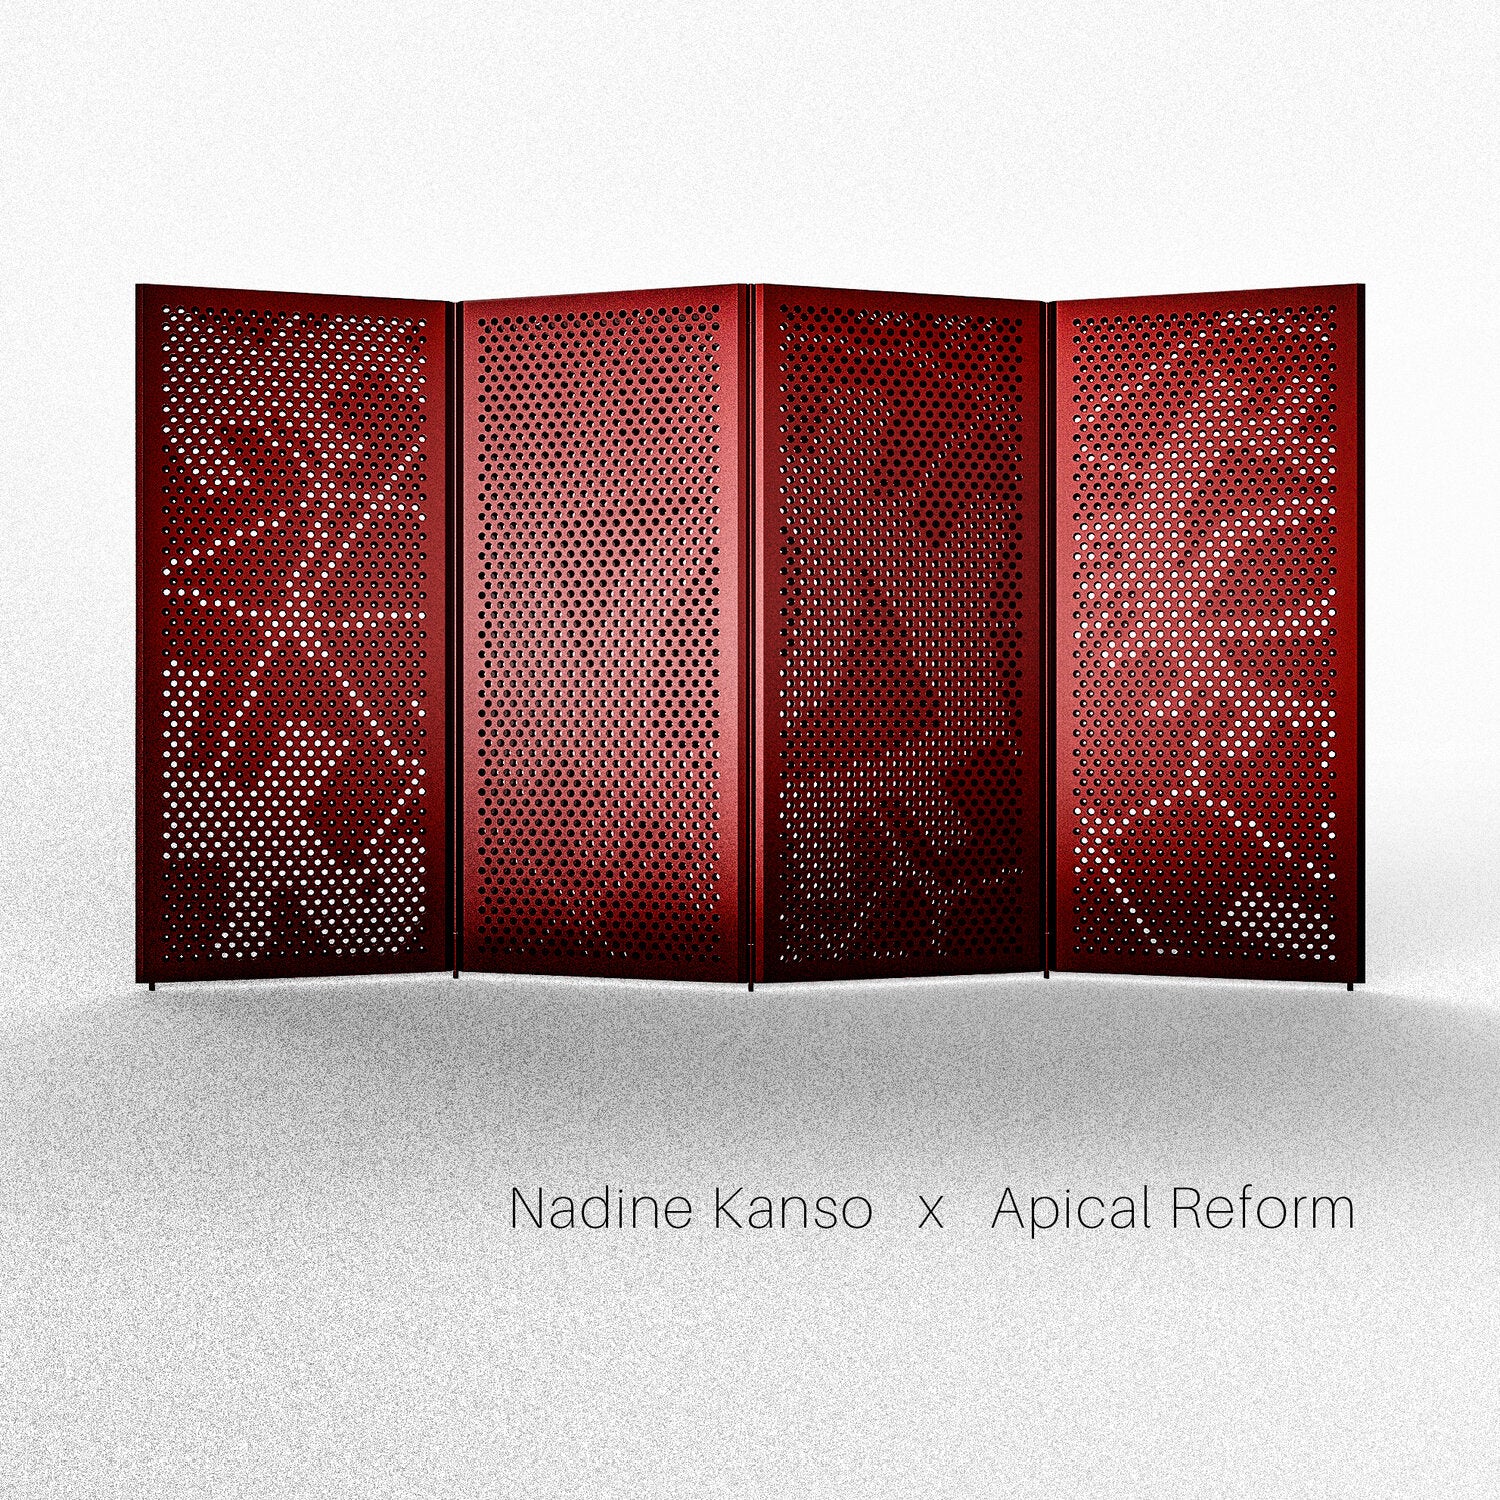 2017-NADINE KANSO X APICAL REFORM 2017